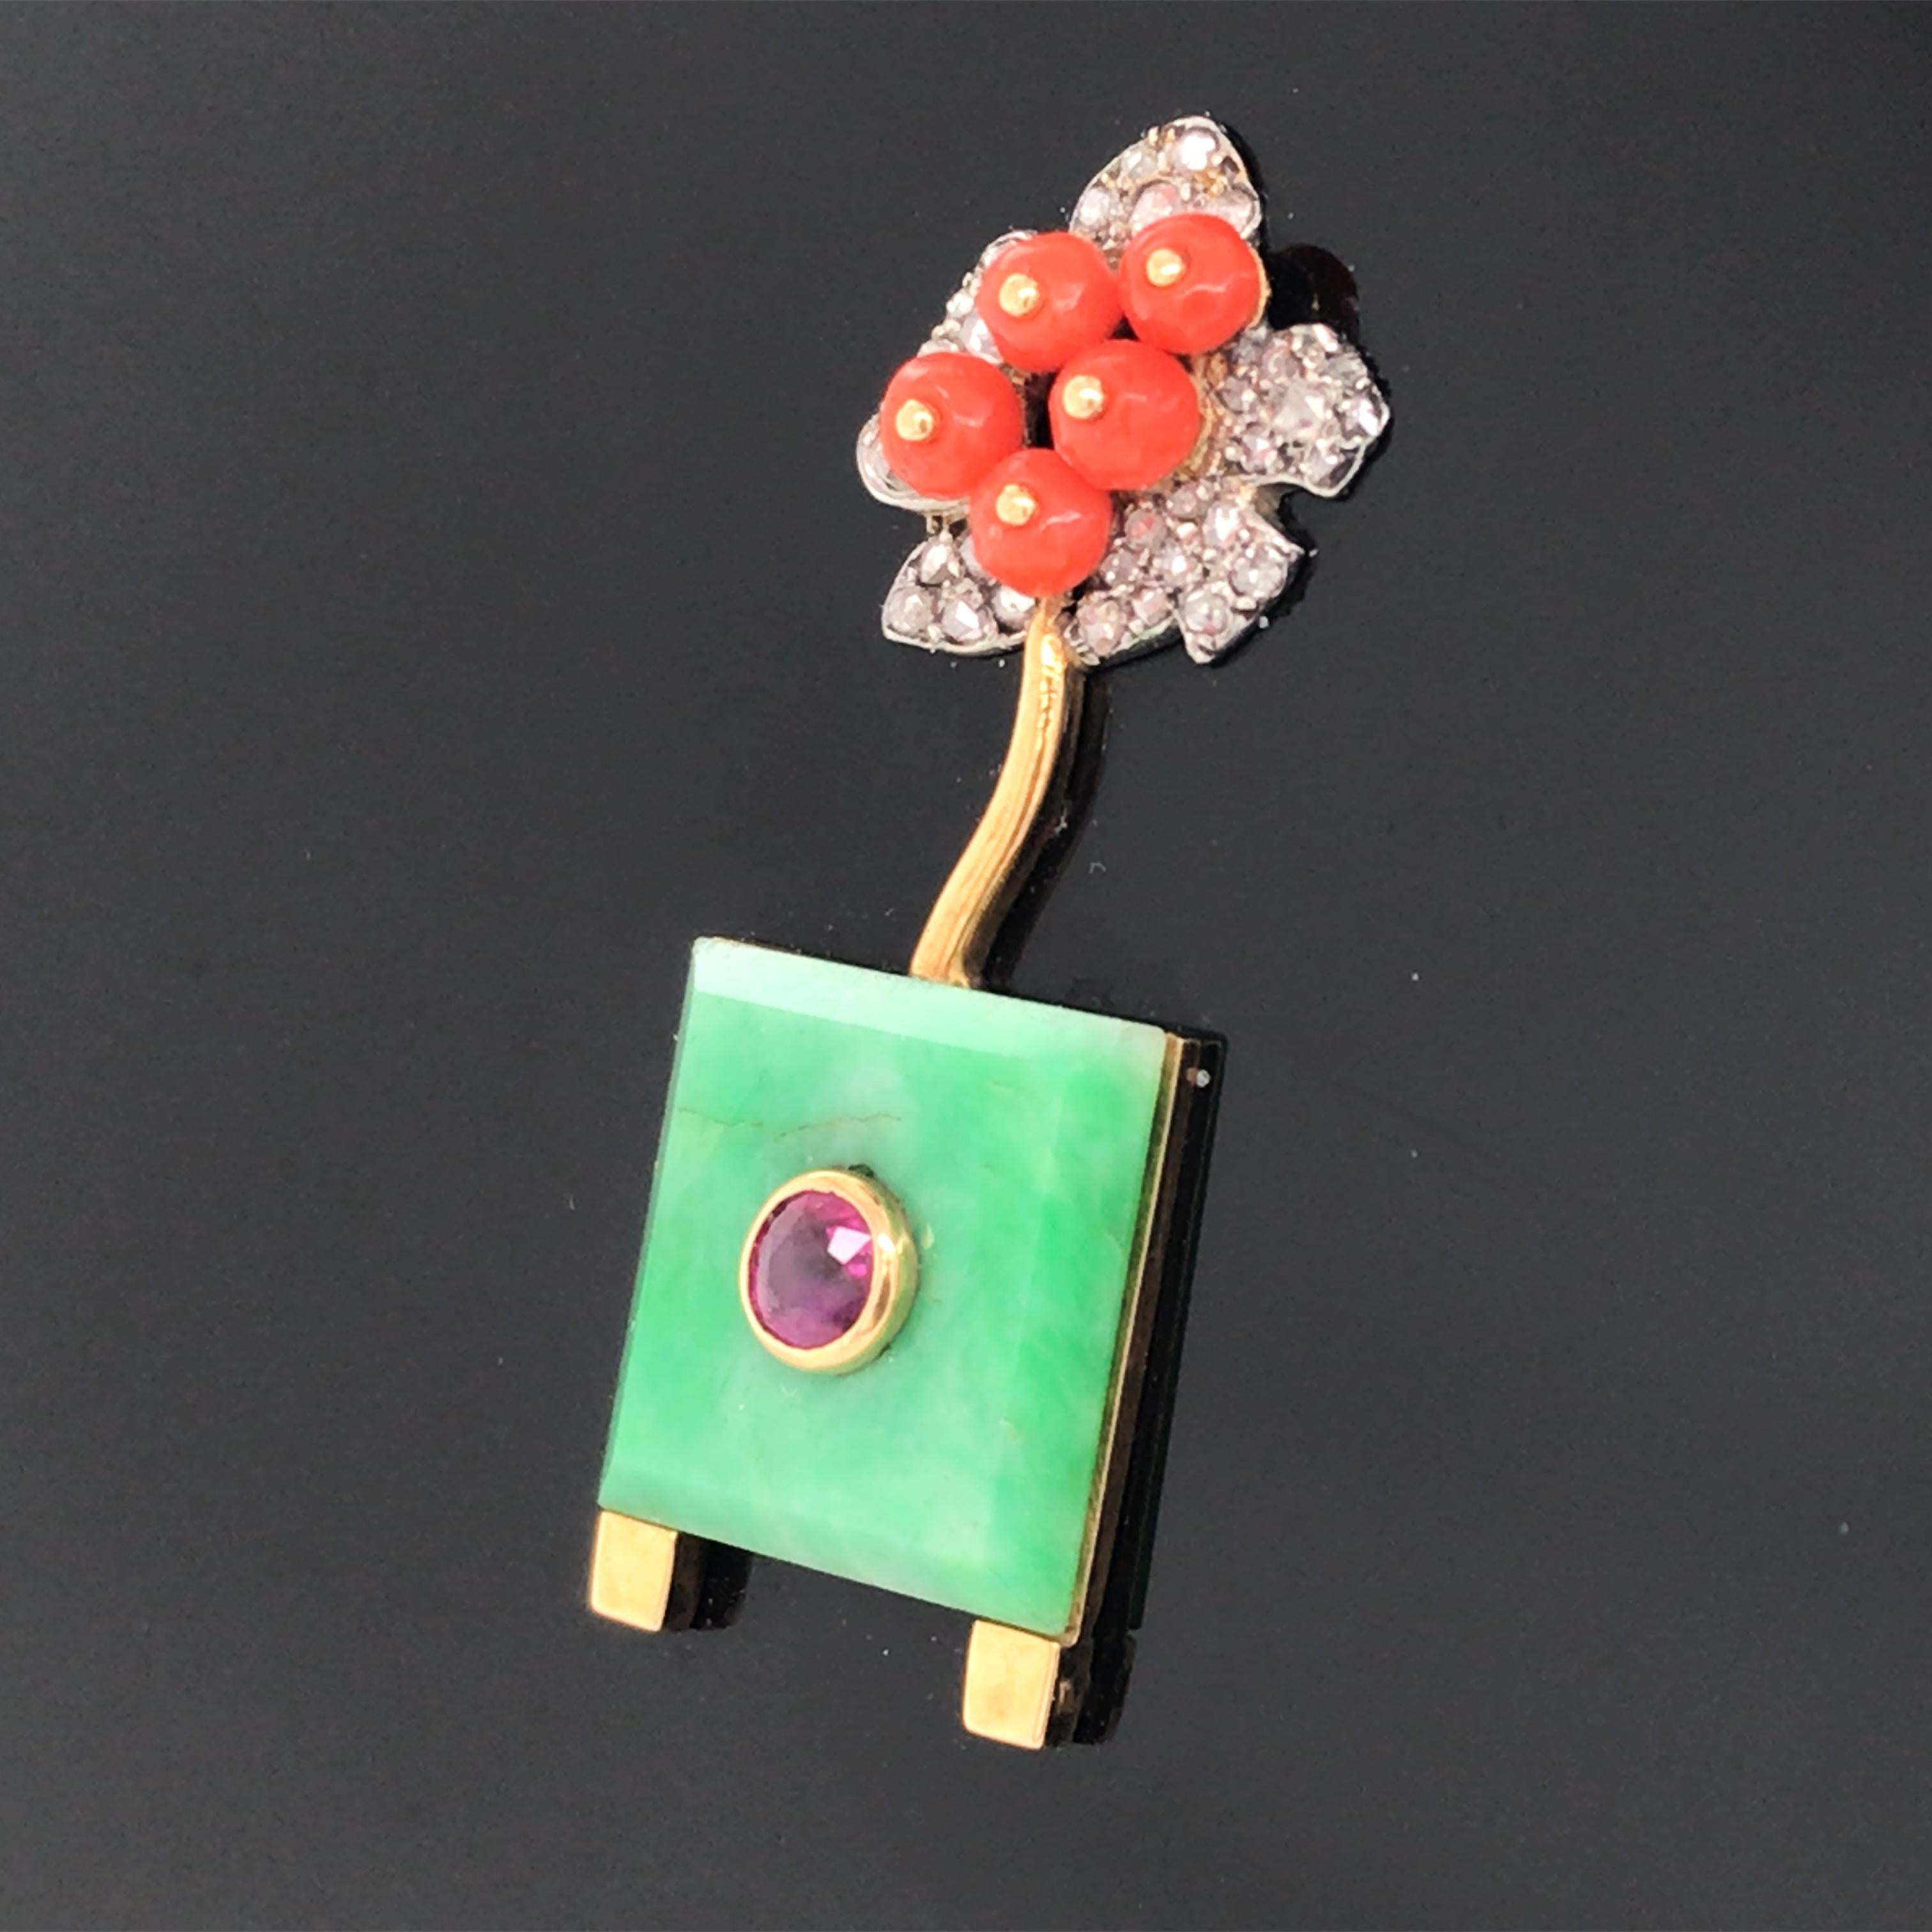 CIRCA 1925. Diamanten im Rosenschliff, quadratisches Jadeplättchen, runder Rubin, Korallenperlen, schwarzes Harz. 

Stempel: 